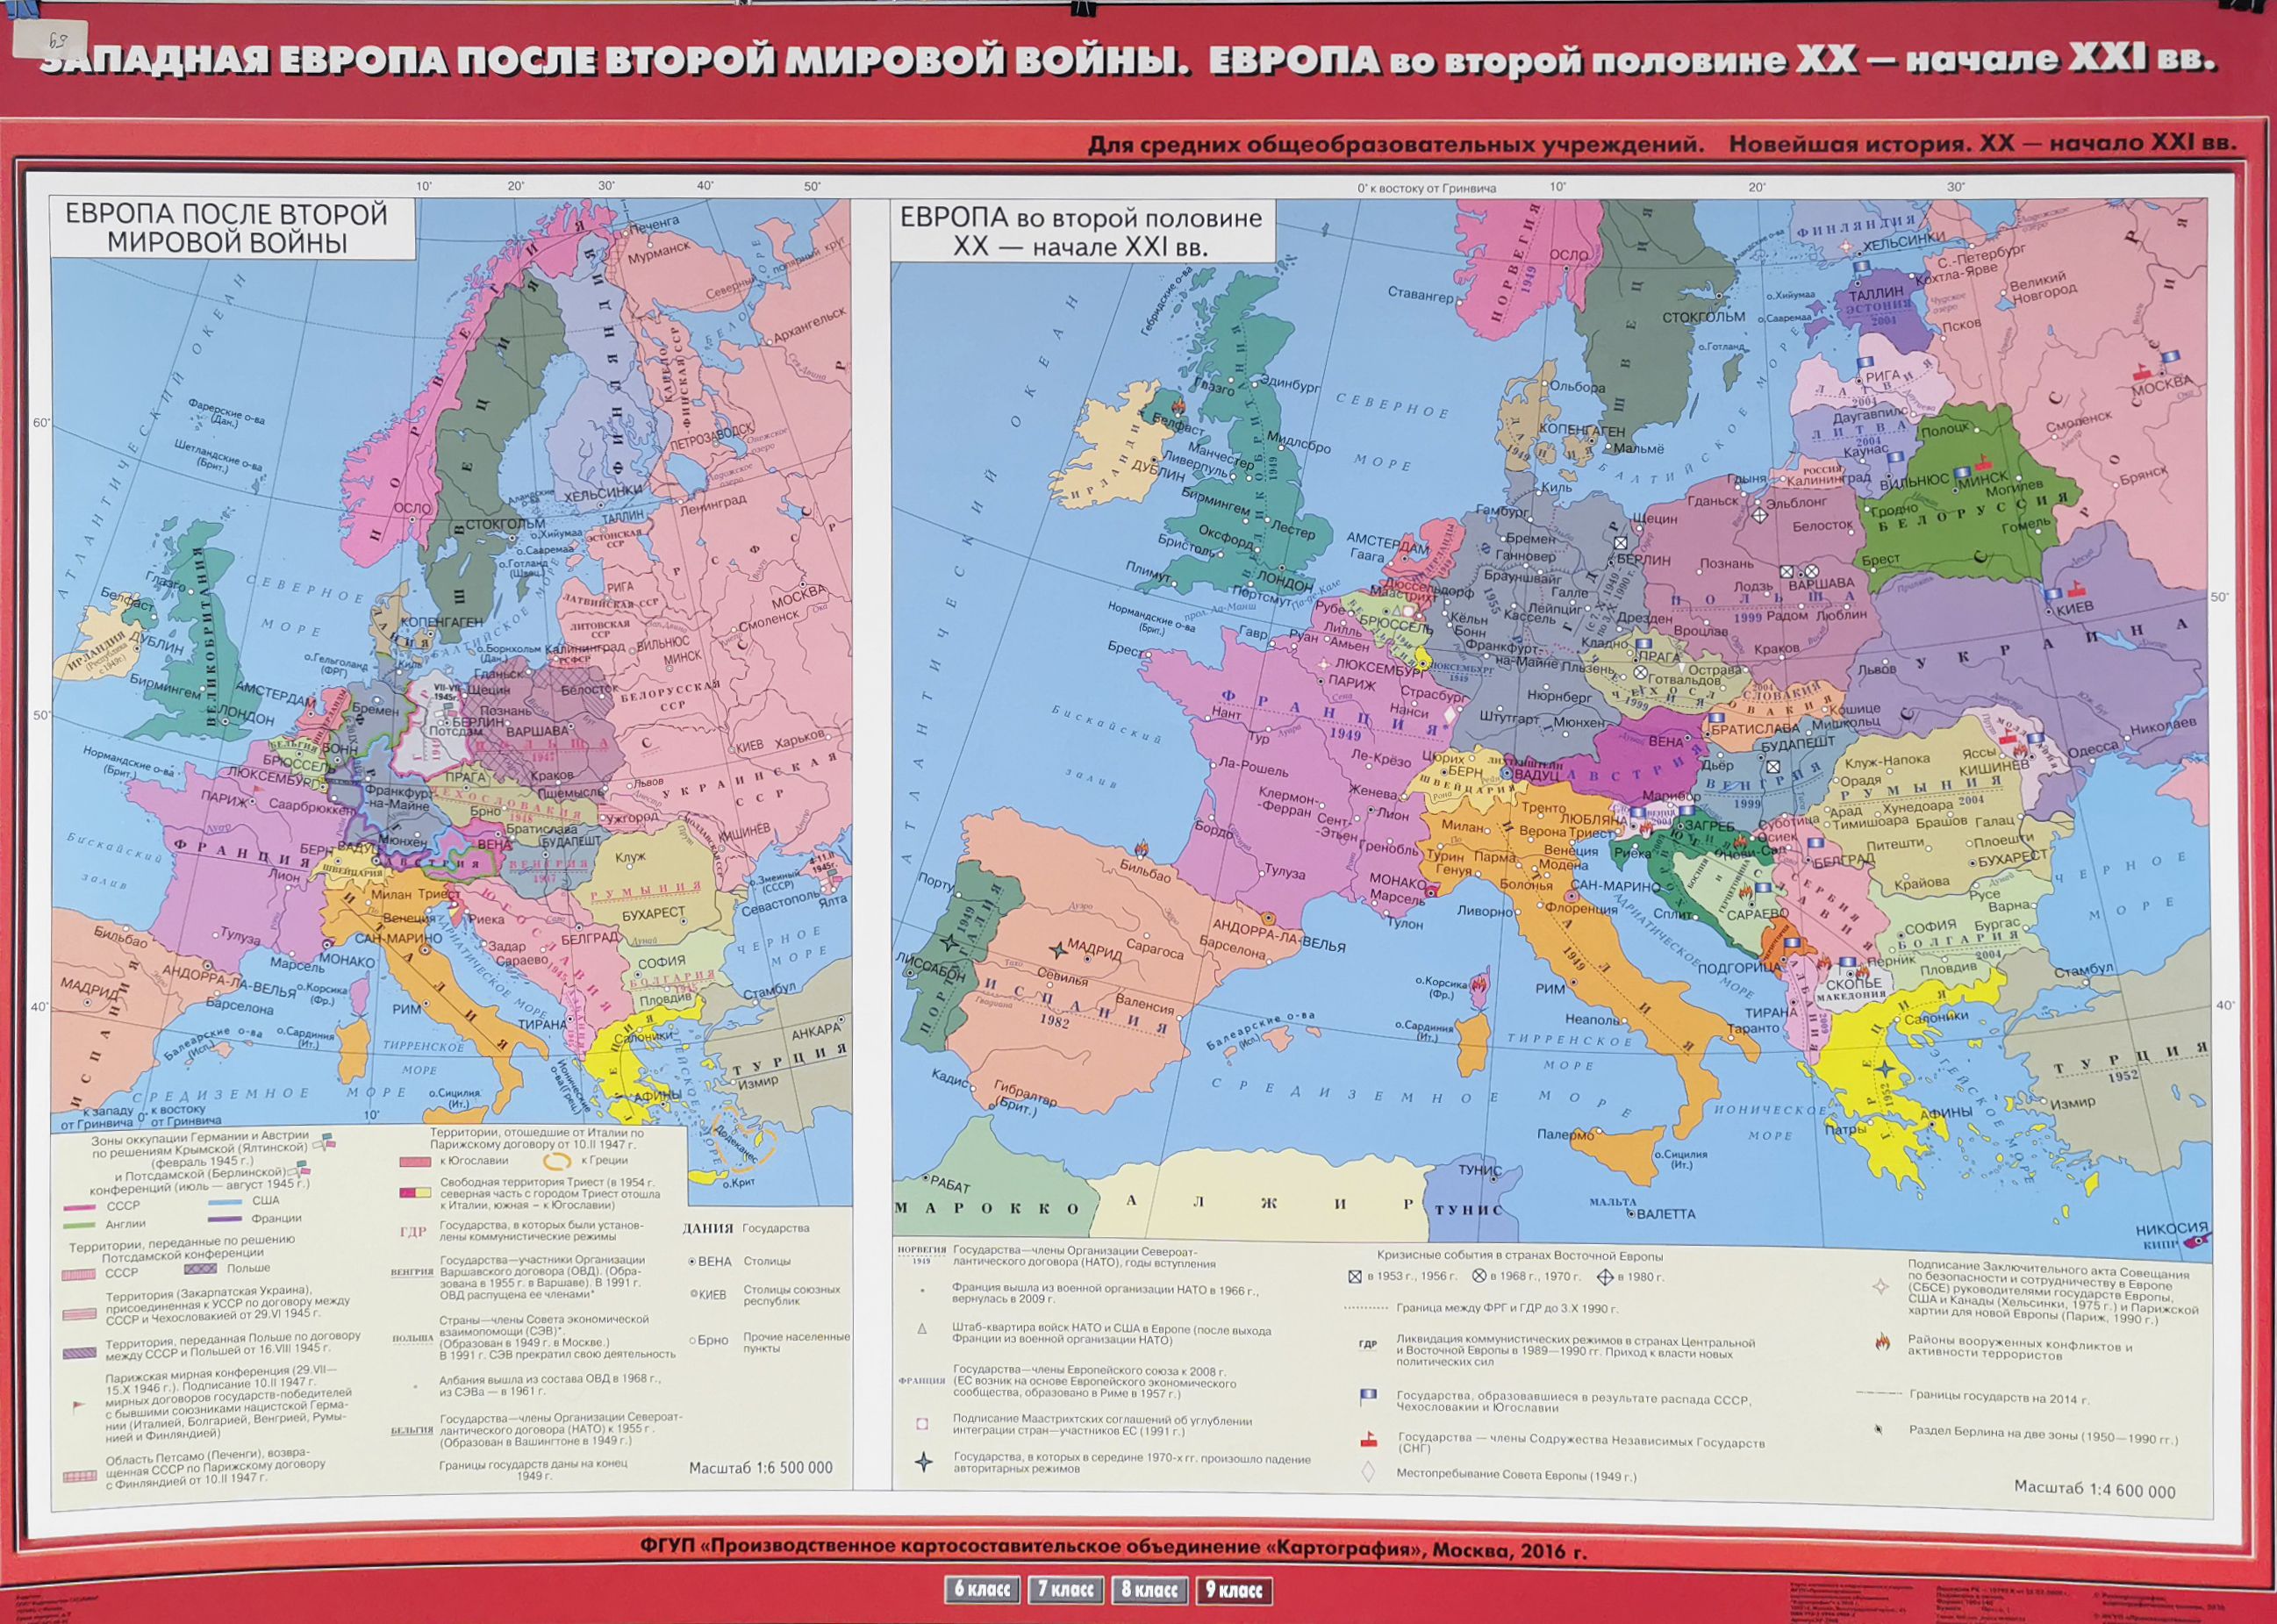 Страны европы во 2 половине 20 века. Карта Европы накануне второй мировой войны. Карта Европы после 2 мировой войны. Территориальные изменения в Европе после второй мировой войны карта. Западная Европа после первой мировой войны карта.